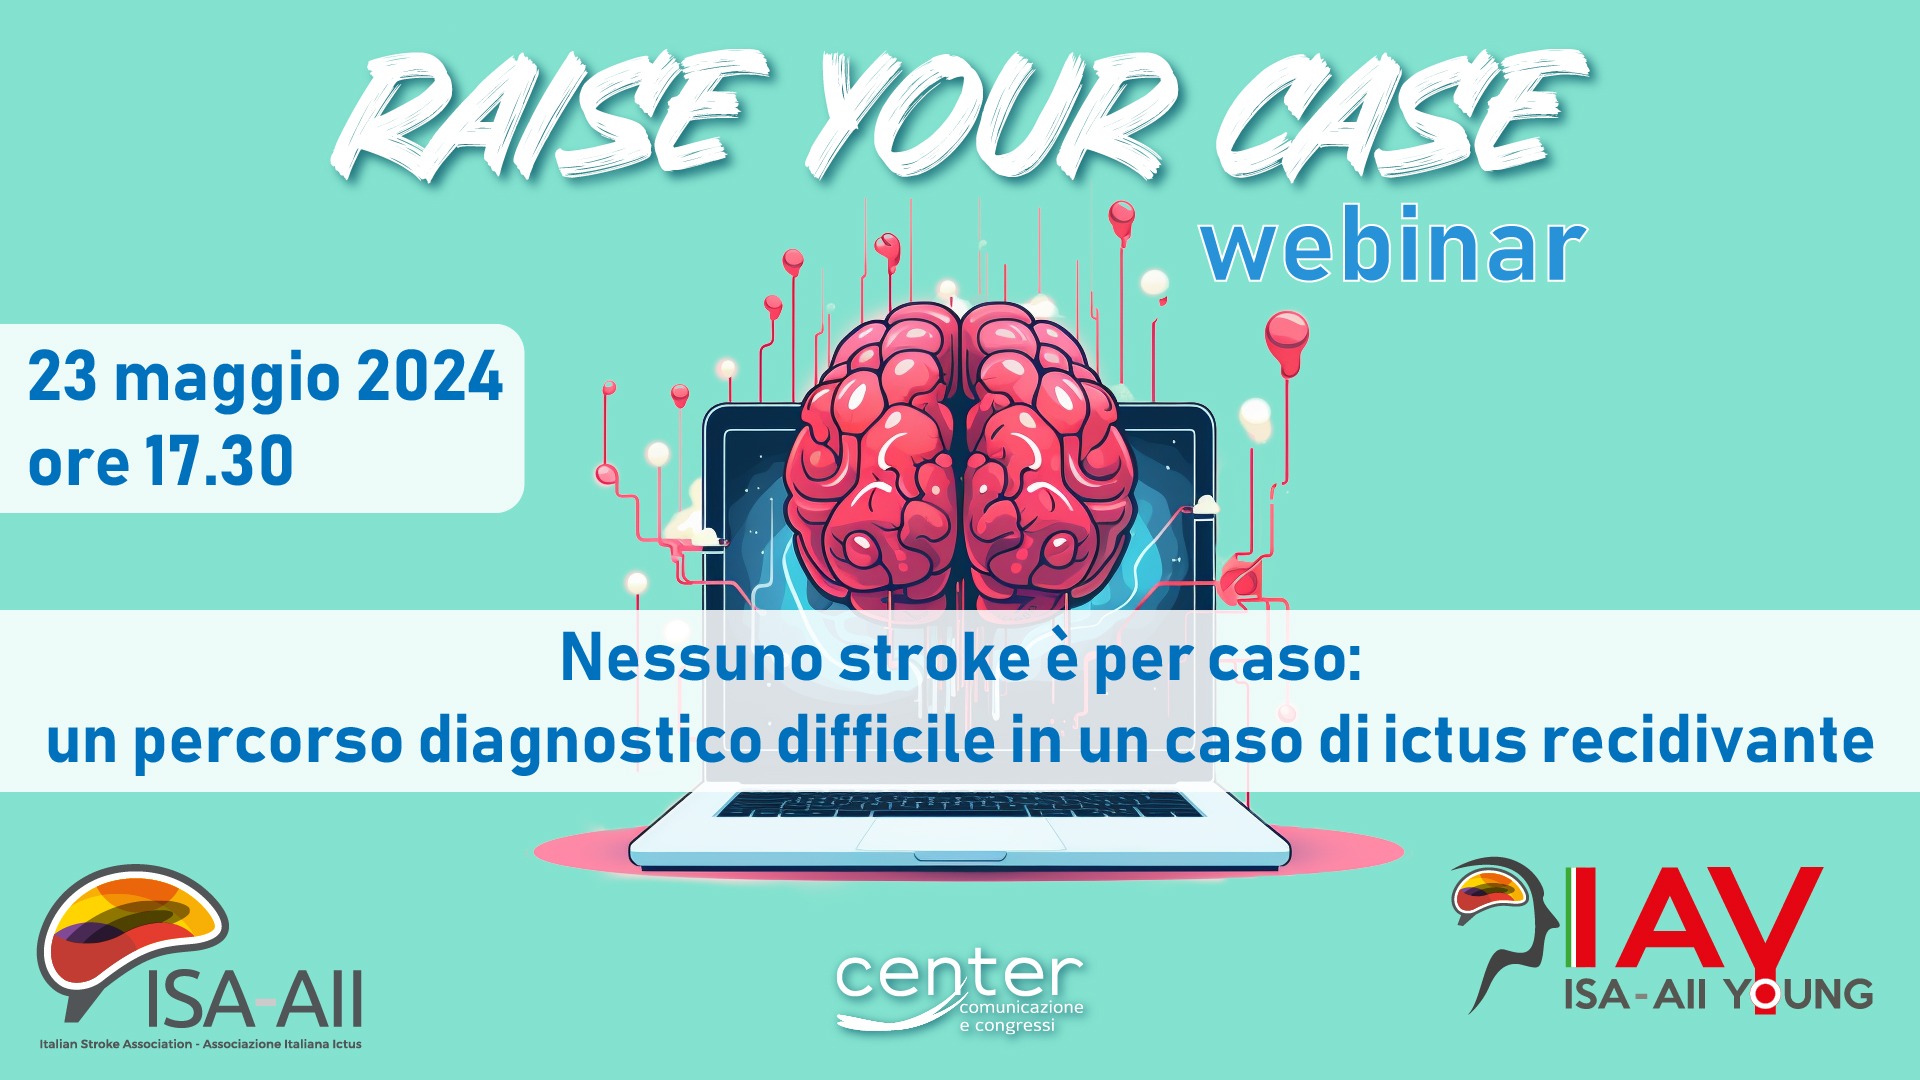 Raise Your Case – Nessuno stroke è per caso: un percorso diagnostico difficile in un caso di ictus recidivante